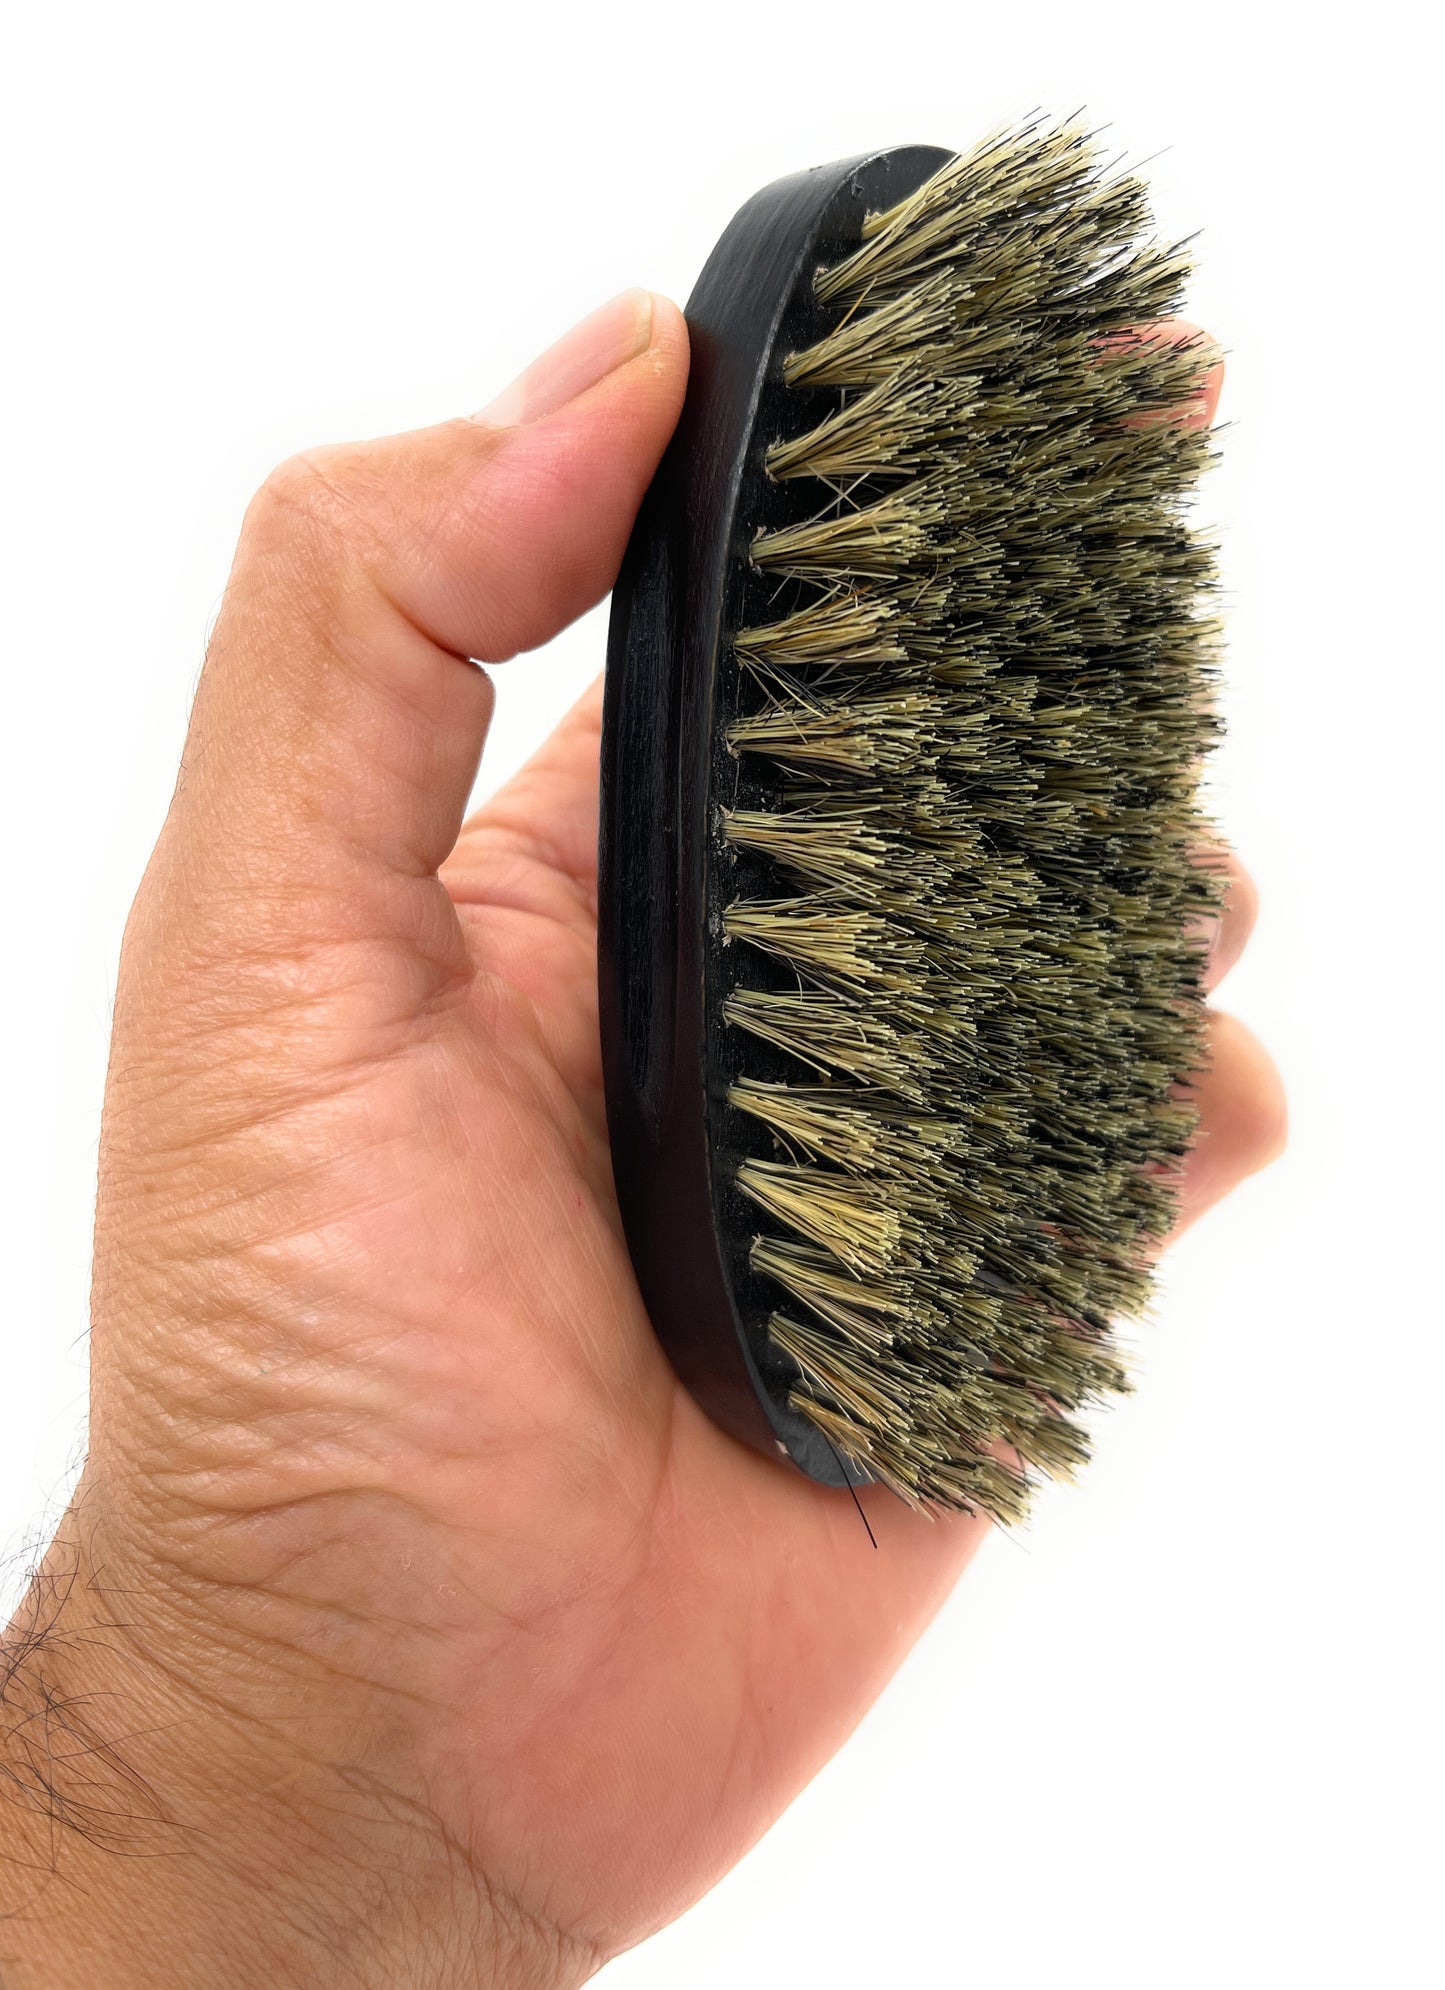 Phillips Brush military Wood Bristle Beard Brush Black Wood Military Style For Short Hair